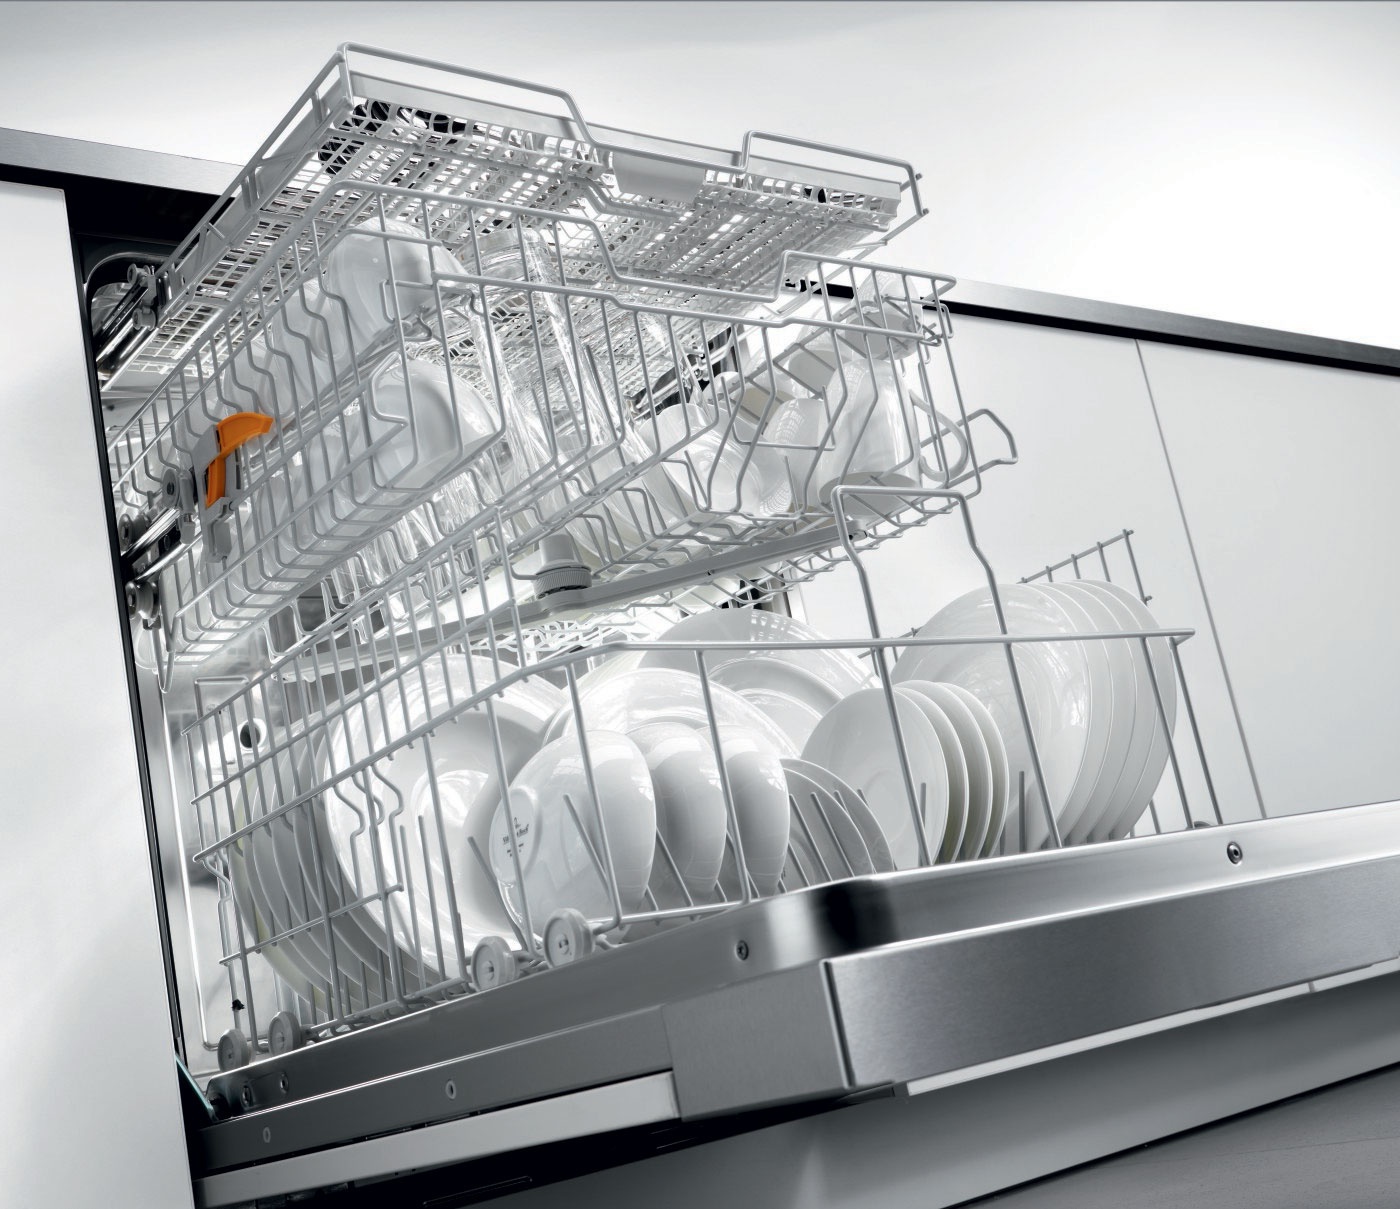 Посудомоечные машины 3 комплекта. Посудомоечная машина Miele g 4210 Sci. Посудомоечная машина Miele g 4910 i. Посудомоечная машина g5690 SCVI. Miele g 663 посудомоечная машина.